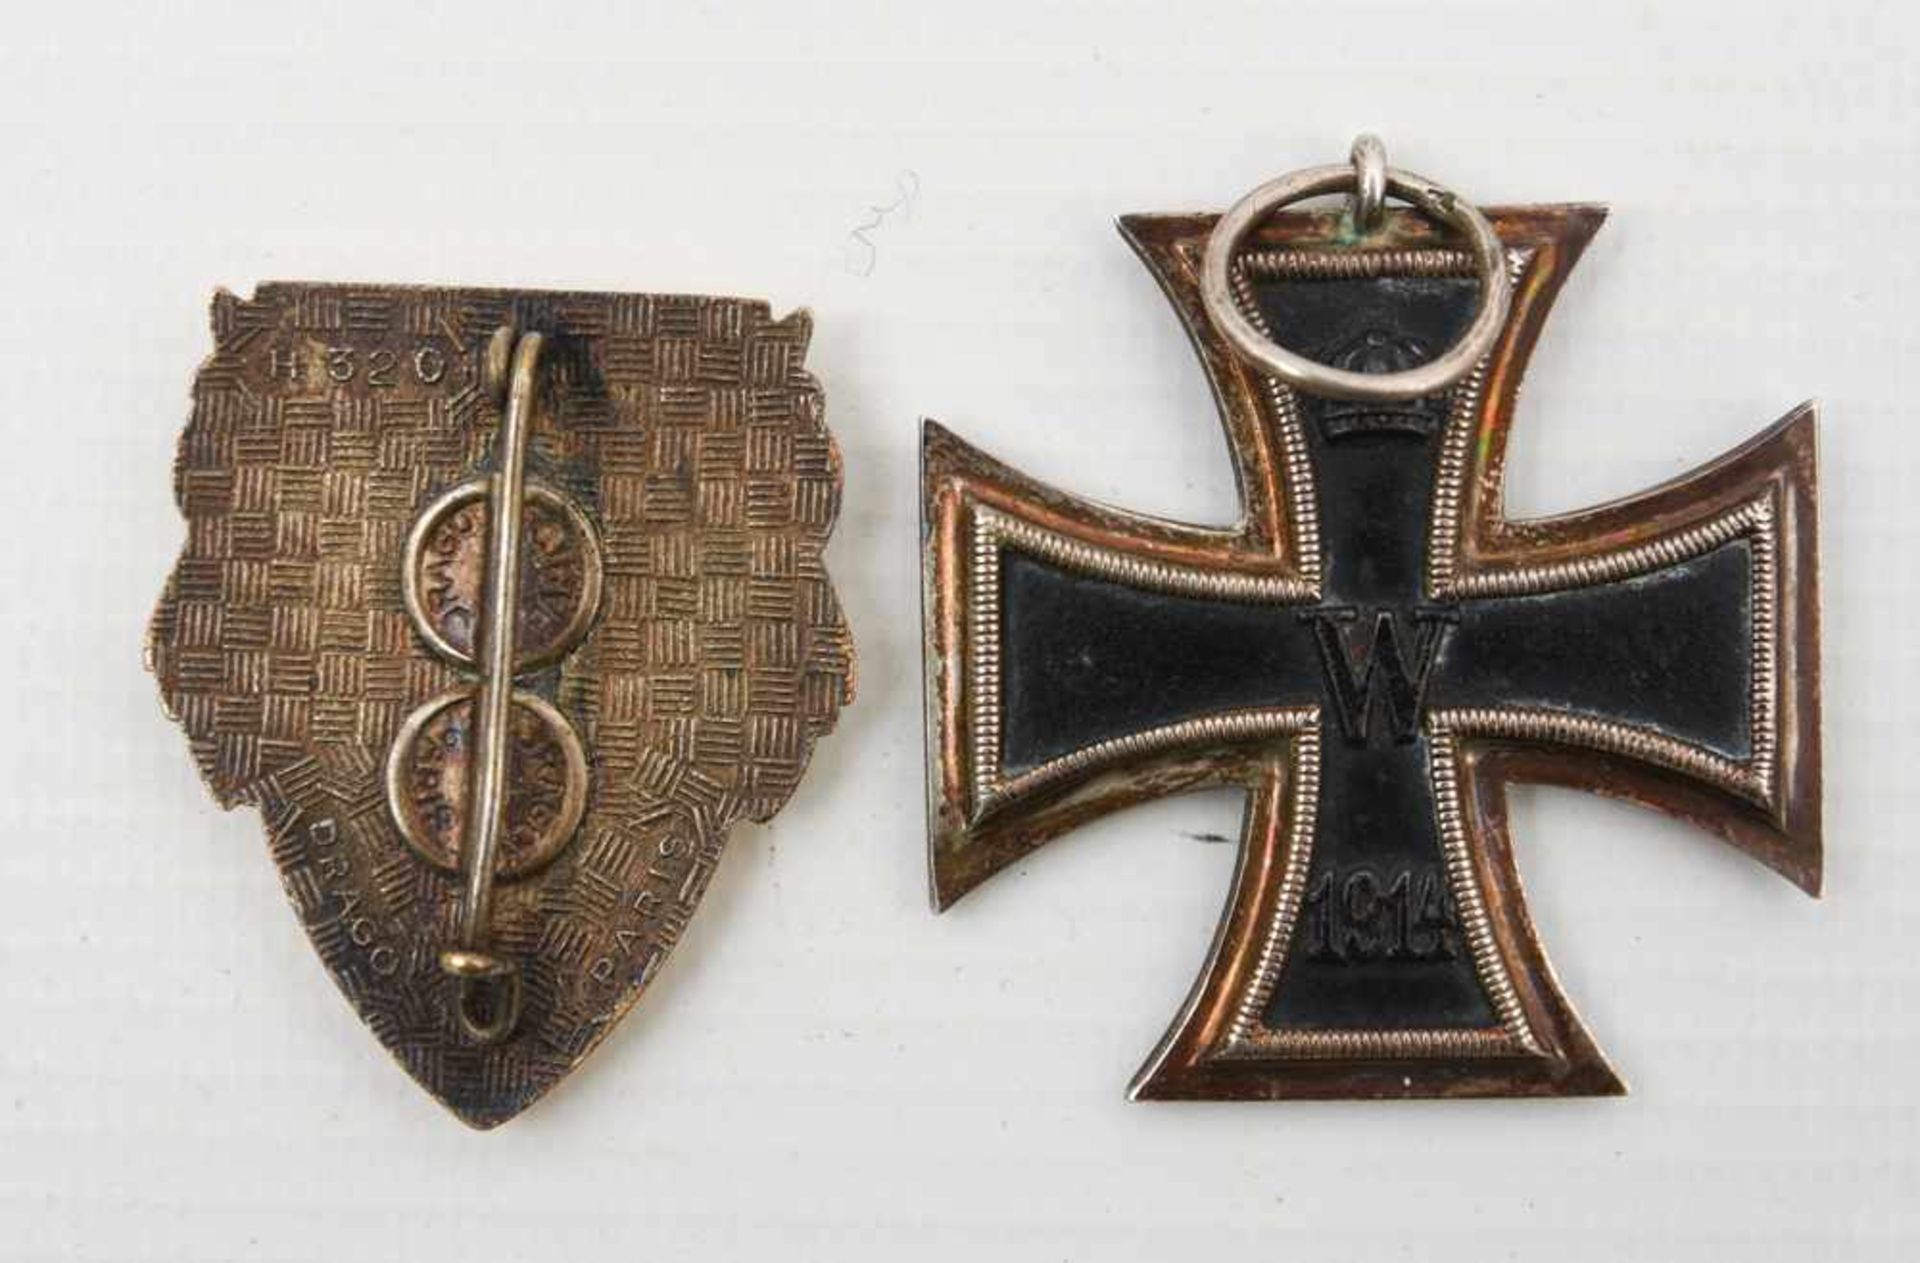 ZWEI ORDEN, Französischer Orden Artillerieregiment und Eisernes Kreuz, 1.Hälfte 20. Jahrhundert 405. - Bild 2 aus 2